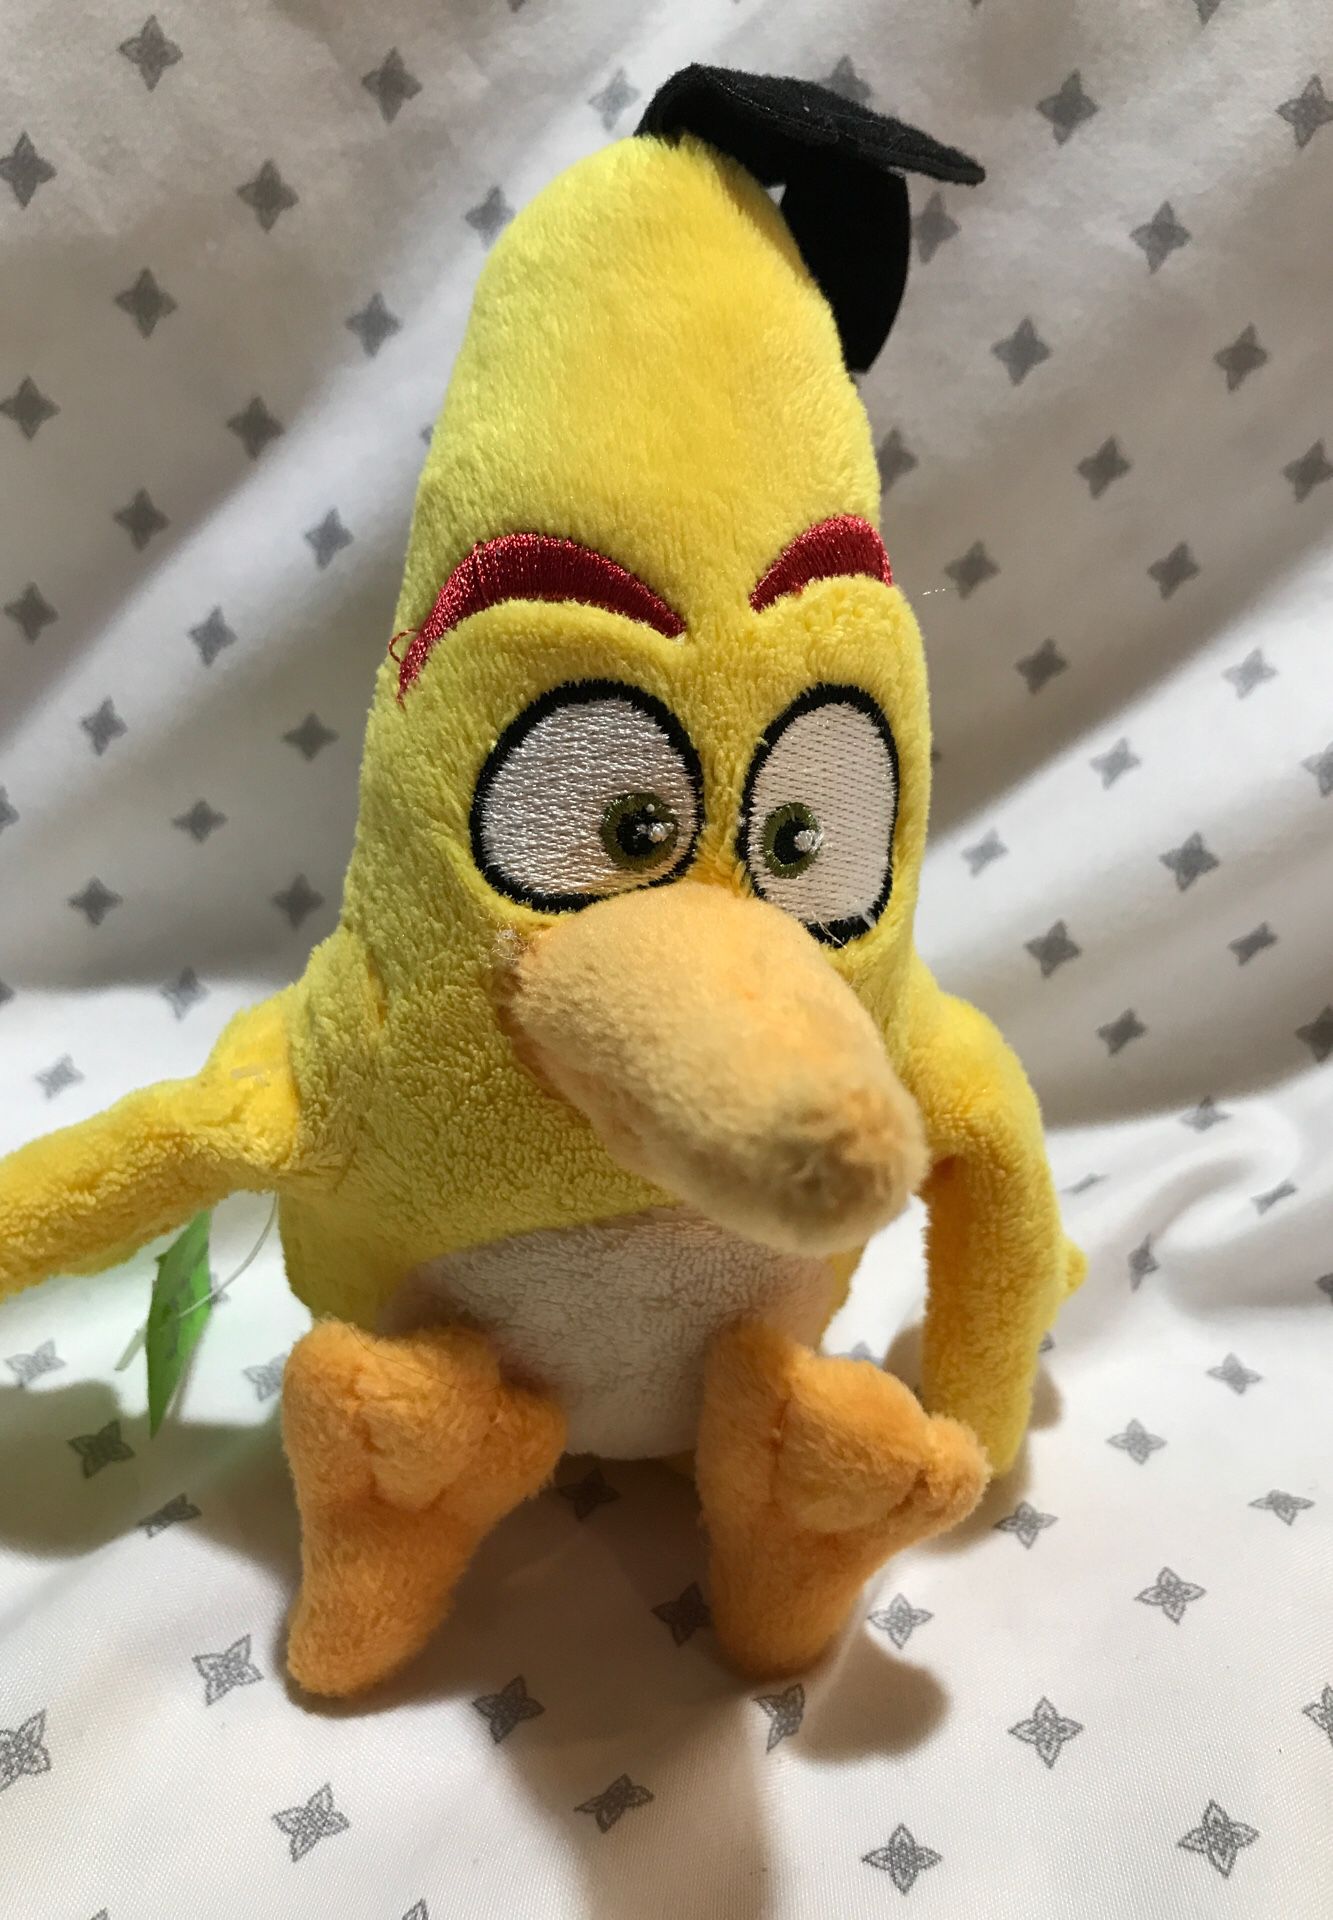 7” Angry Bird stuffed animal